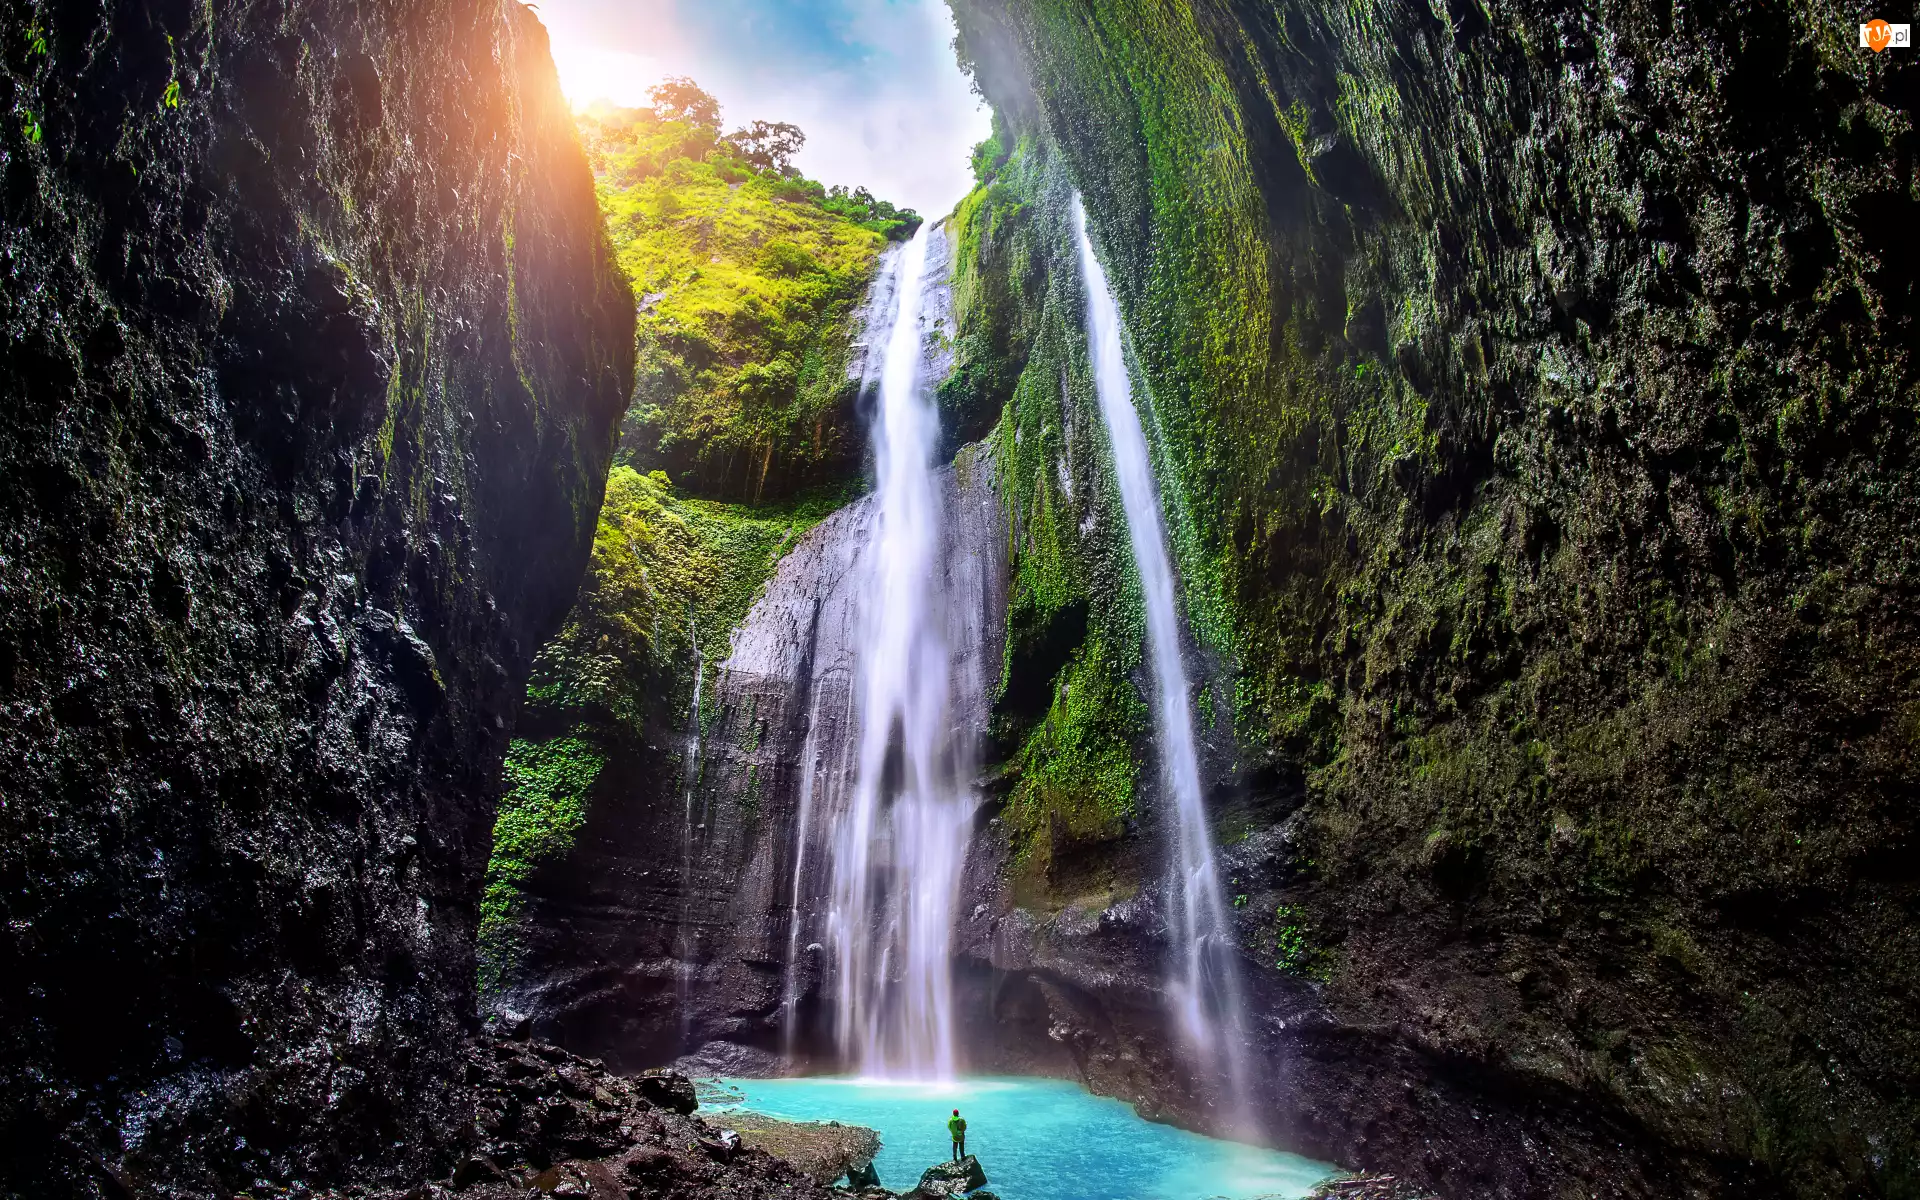 Madakaripura Waterfall, Omszałe, Indonezja, Wodospad, Wyspa Jawa, Drzewa, Skały